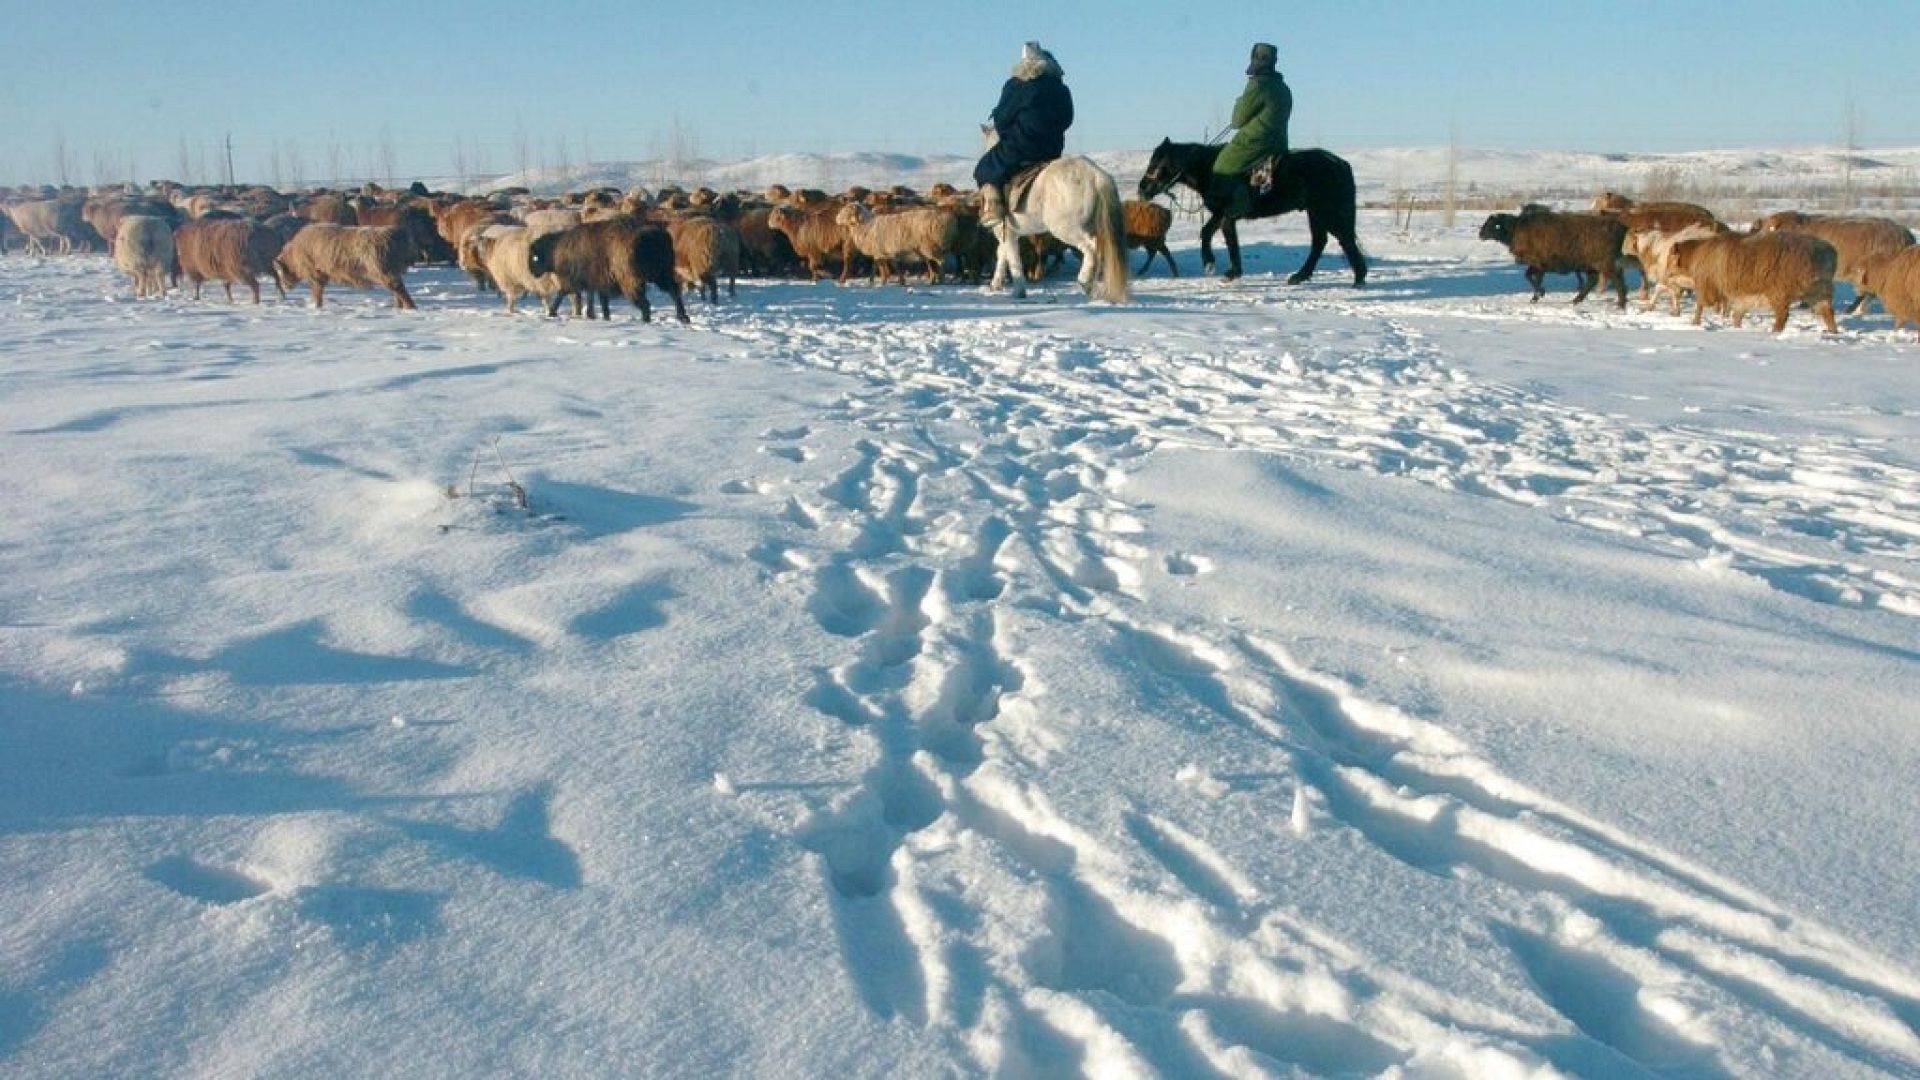 Moğolistan'ı vuran sert kış koşulları nedeniyle 2 milyon baştan fazla hayvan öldü